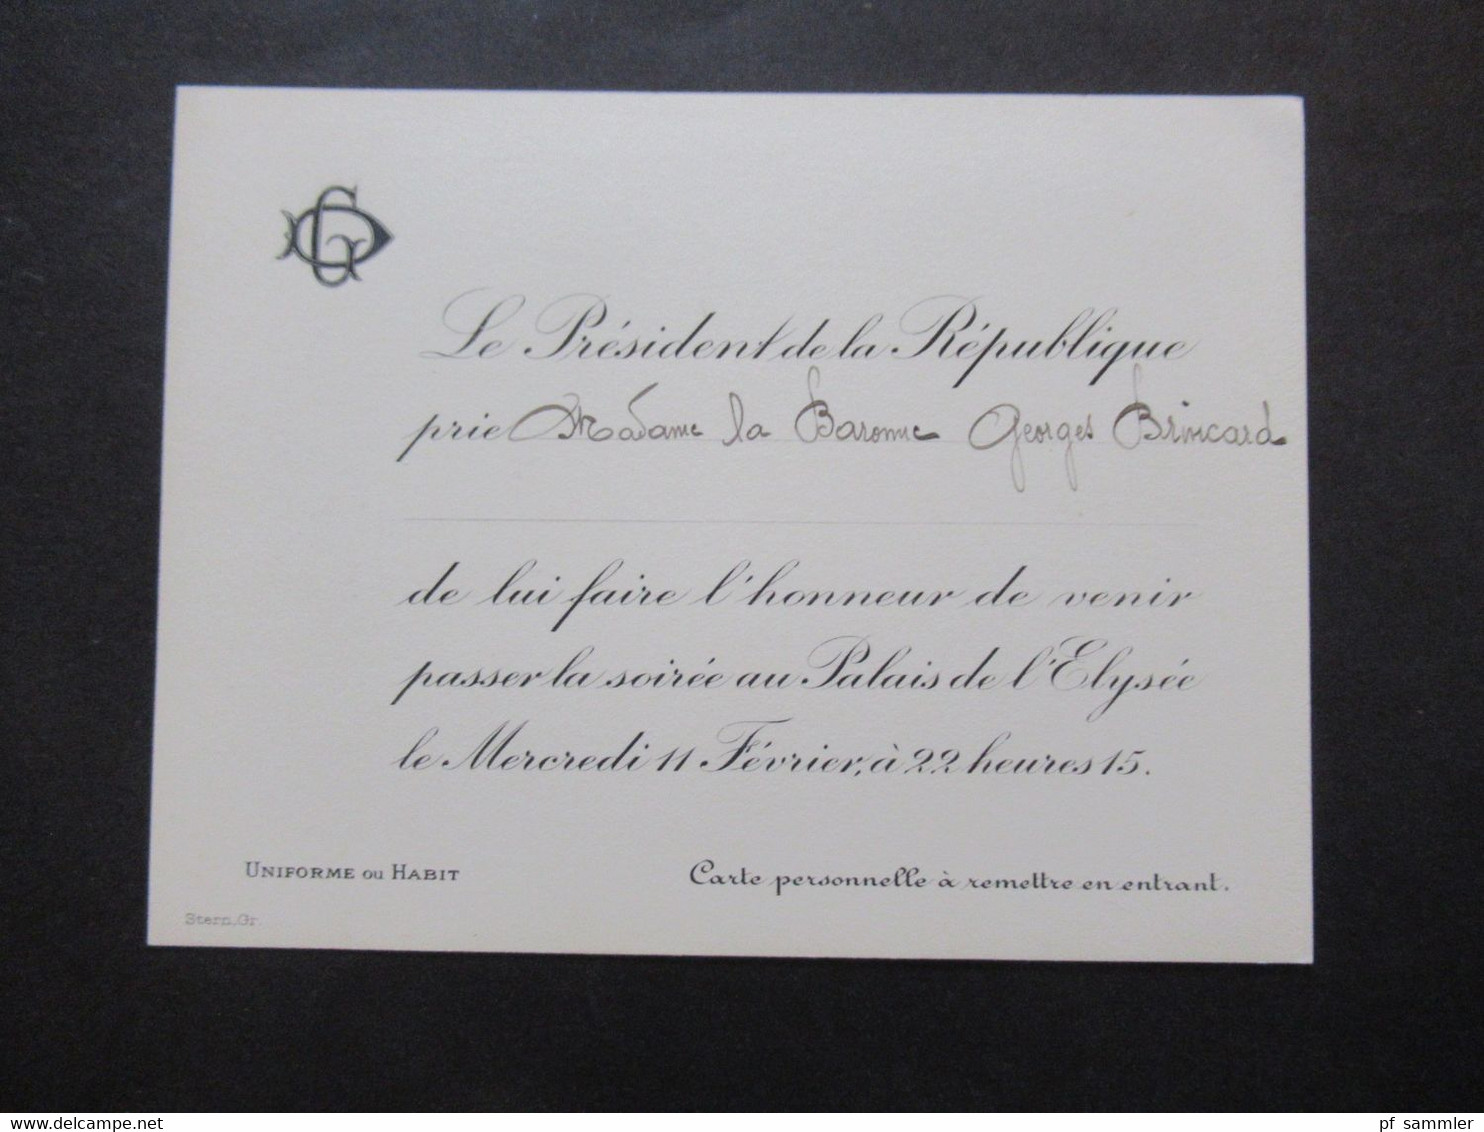 Frankreich 1920er Jahre 2x Originale Einladungskarte Von Gaston Doumergue Le President De La Republique Zur Soirée - Eintrittskarten